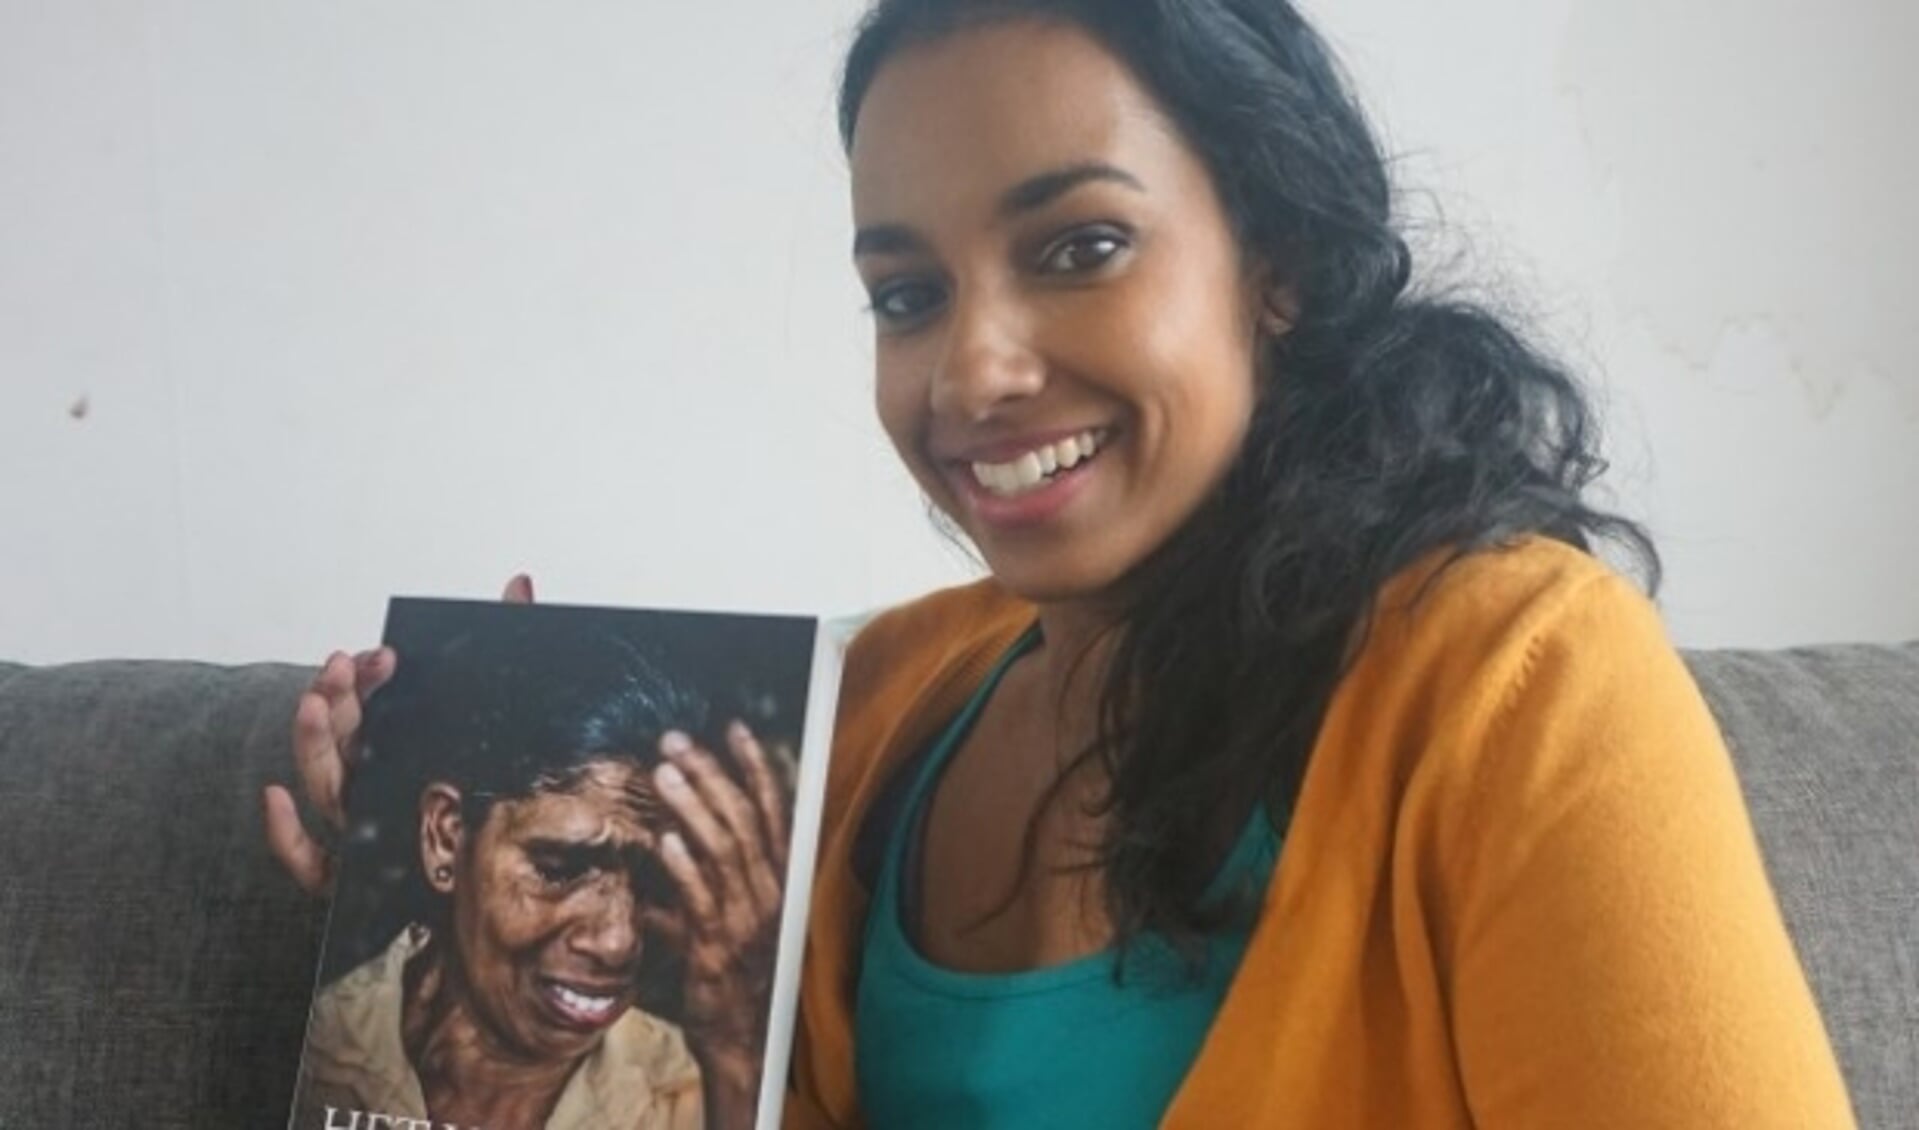 De Berkelse Sanne van Rossen schreef een boek over adoptieverhalen. Het Verdriet van Sri Lanka is onder meer verkrijgbaar via internet.